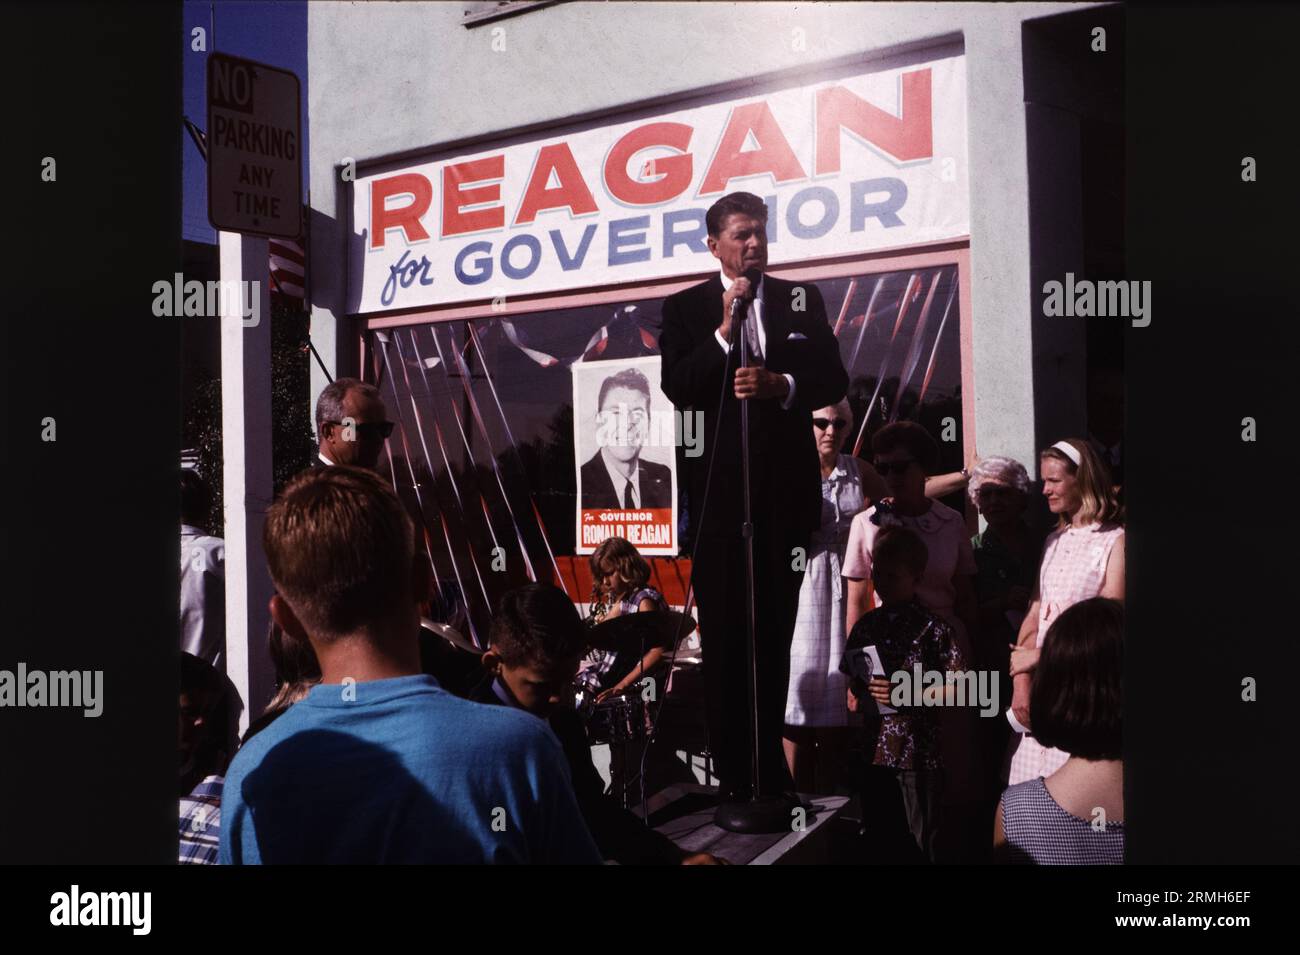 L'acteur hollywoodien Ronald Reagan fait campagne pour devenir gouverneur de Californie en 1966 dans le sud de la Californie. Banque D'Images